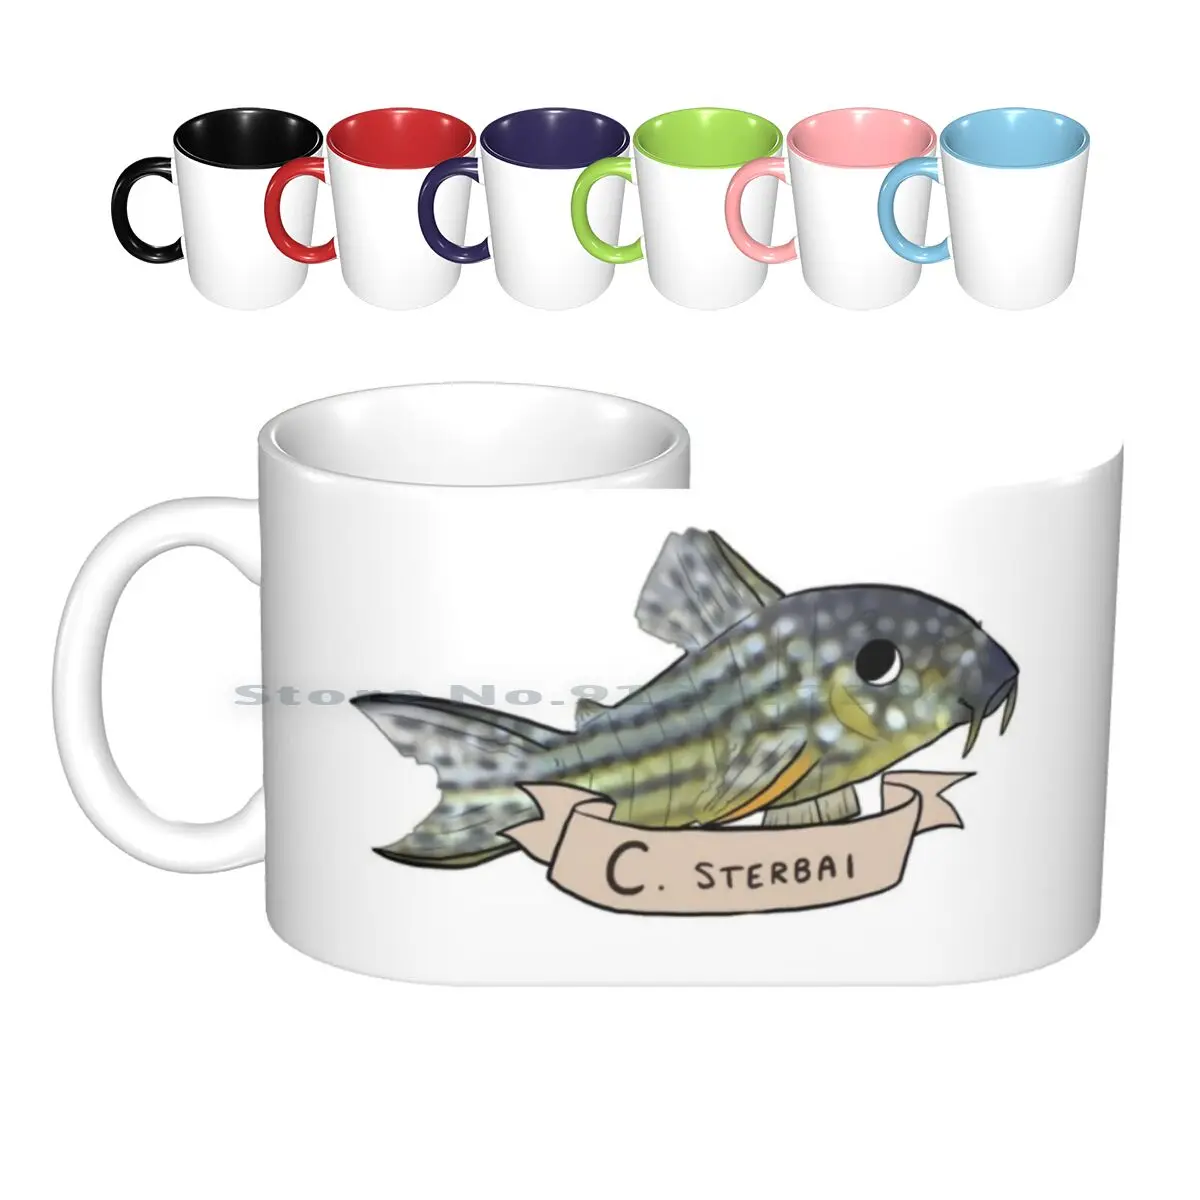 

Керамические кружки Corydoras Sterbai, кофейные чашки, Кружка для молока и чая, кружка Corydoras, кошачья рыба, кошка, рыба, Sterbai, рыболовница